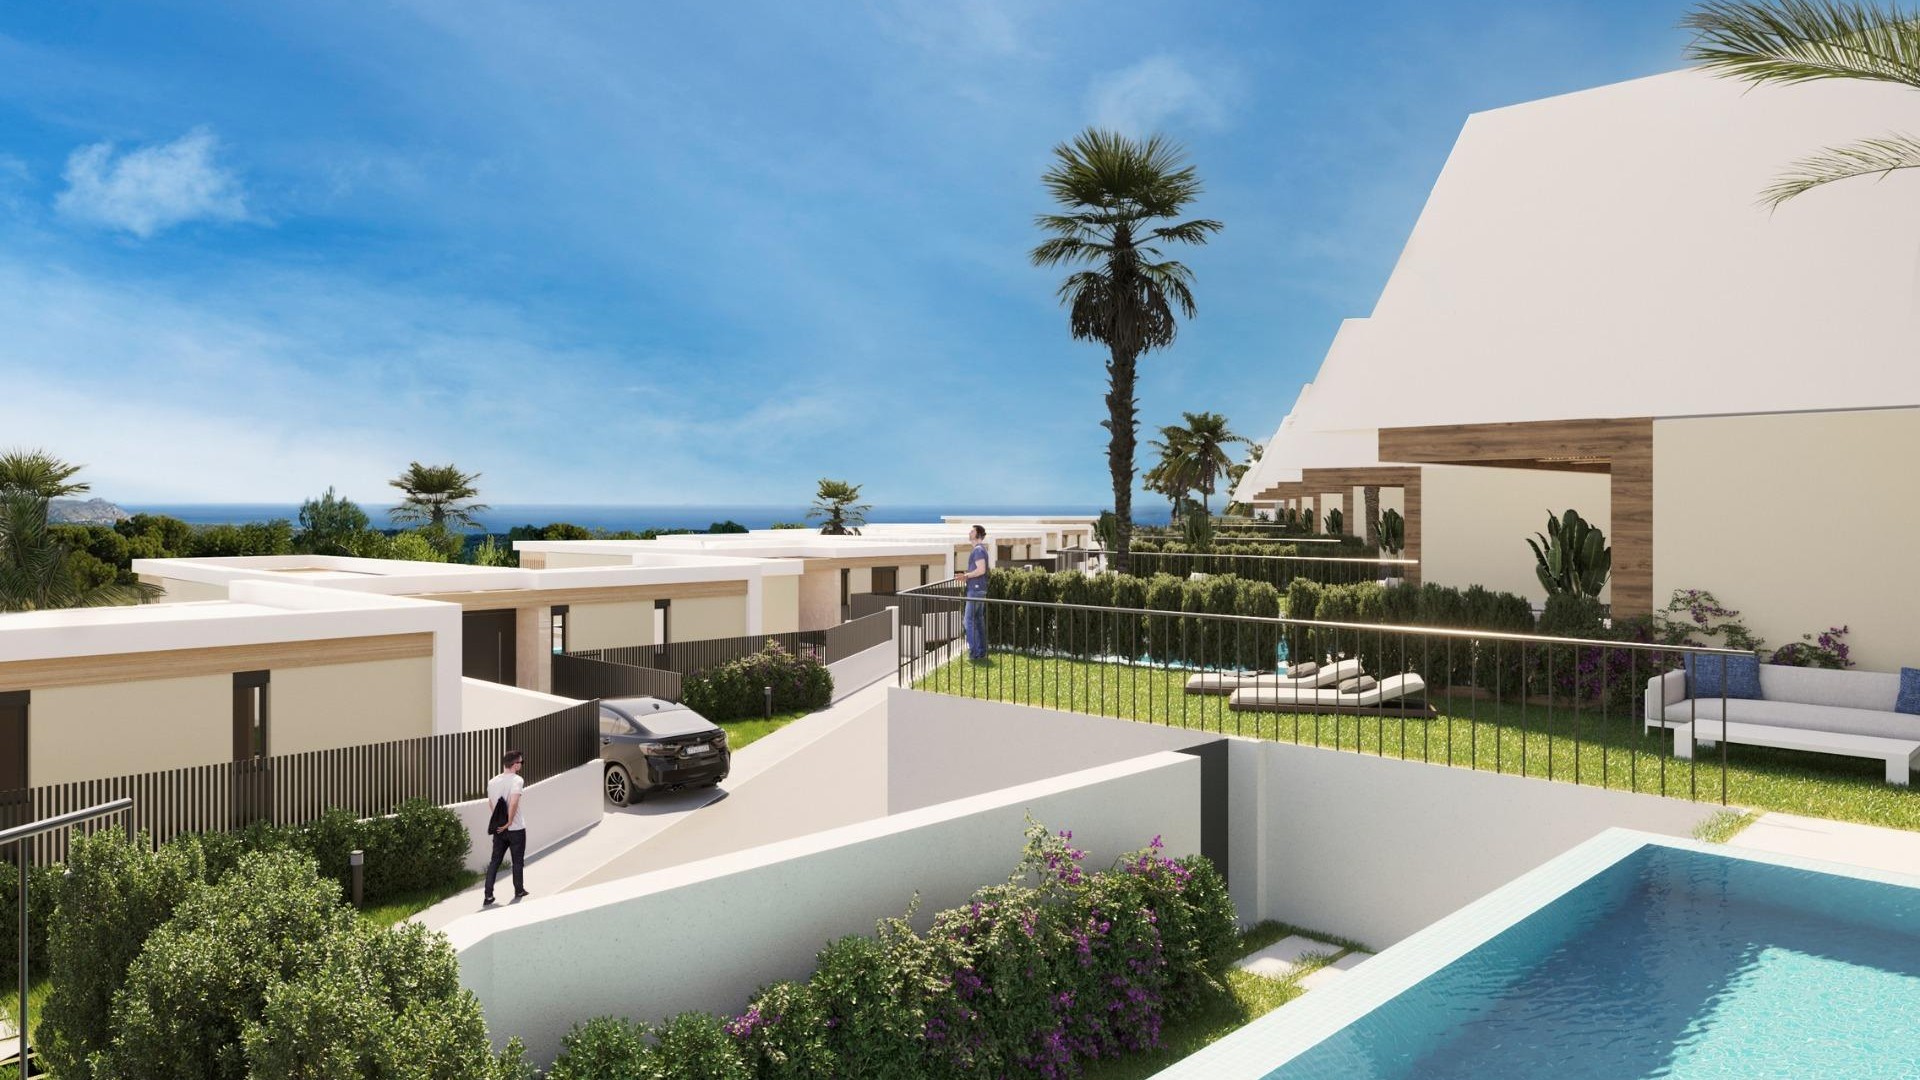 Villaer/hus i Polop, Alicante-nord, 2/3 soverom, 2 bad, terrasser med panoramautsikt, hager, verandaer og solarium i hvert hus, mulighet for basseng